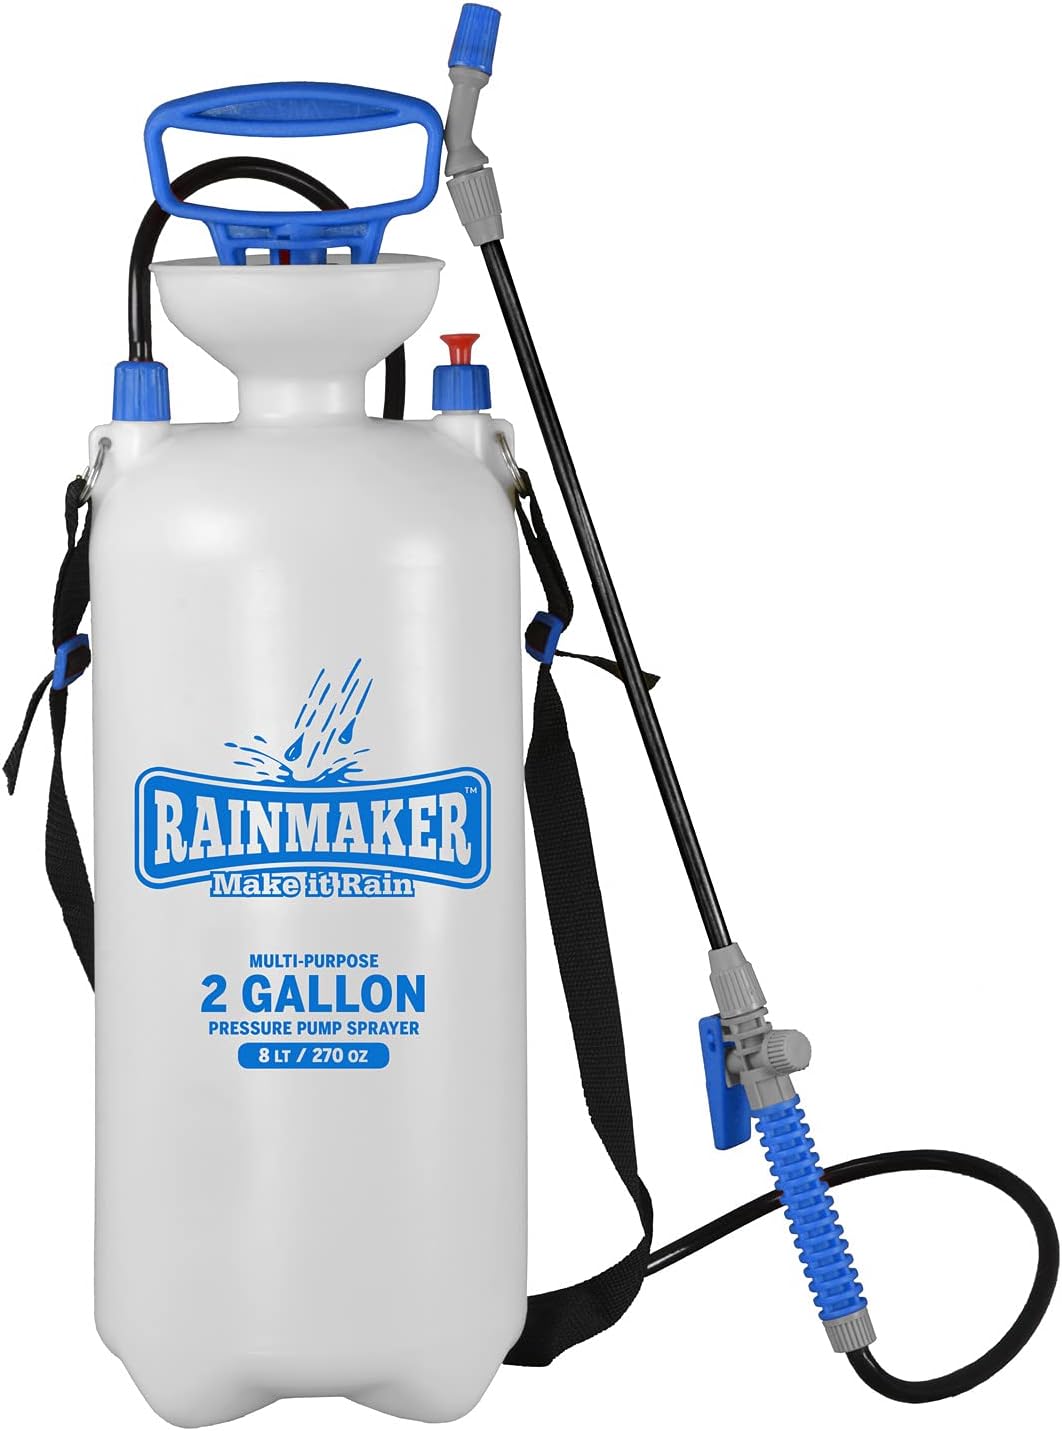 Rainmaker Multi-Purpose Pressure Pump Sprayer - For [...]